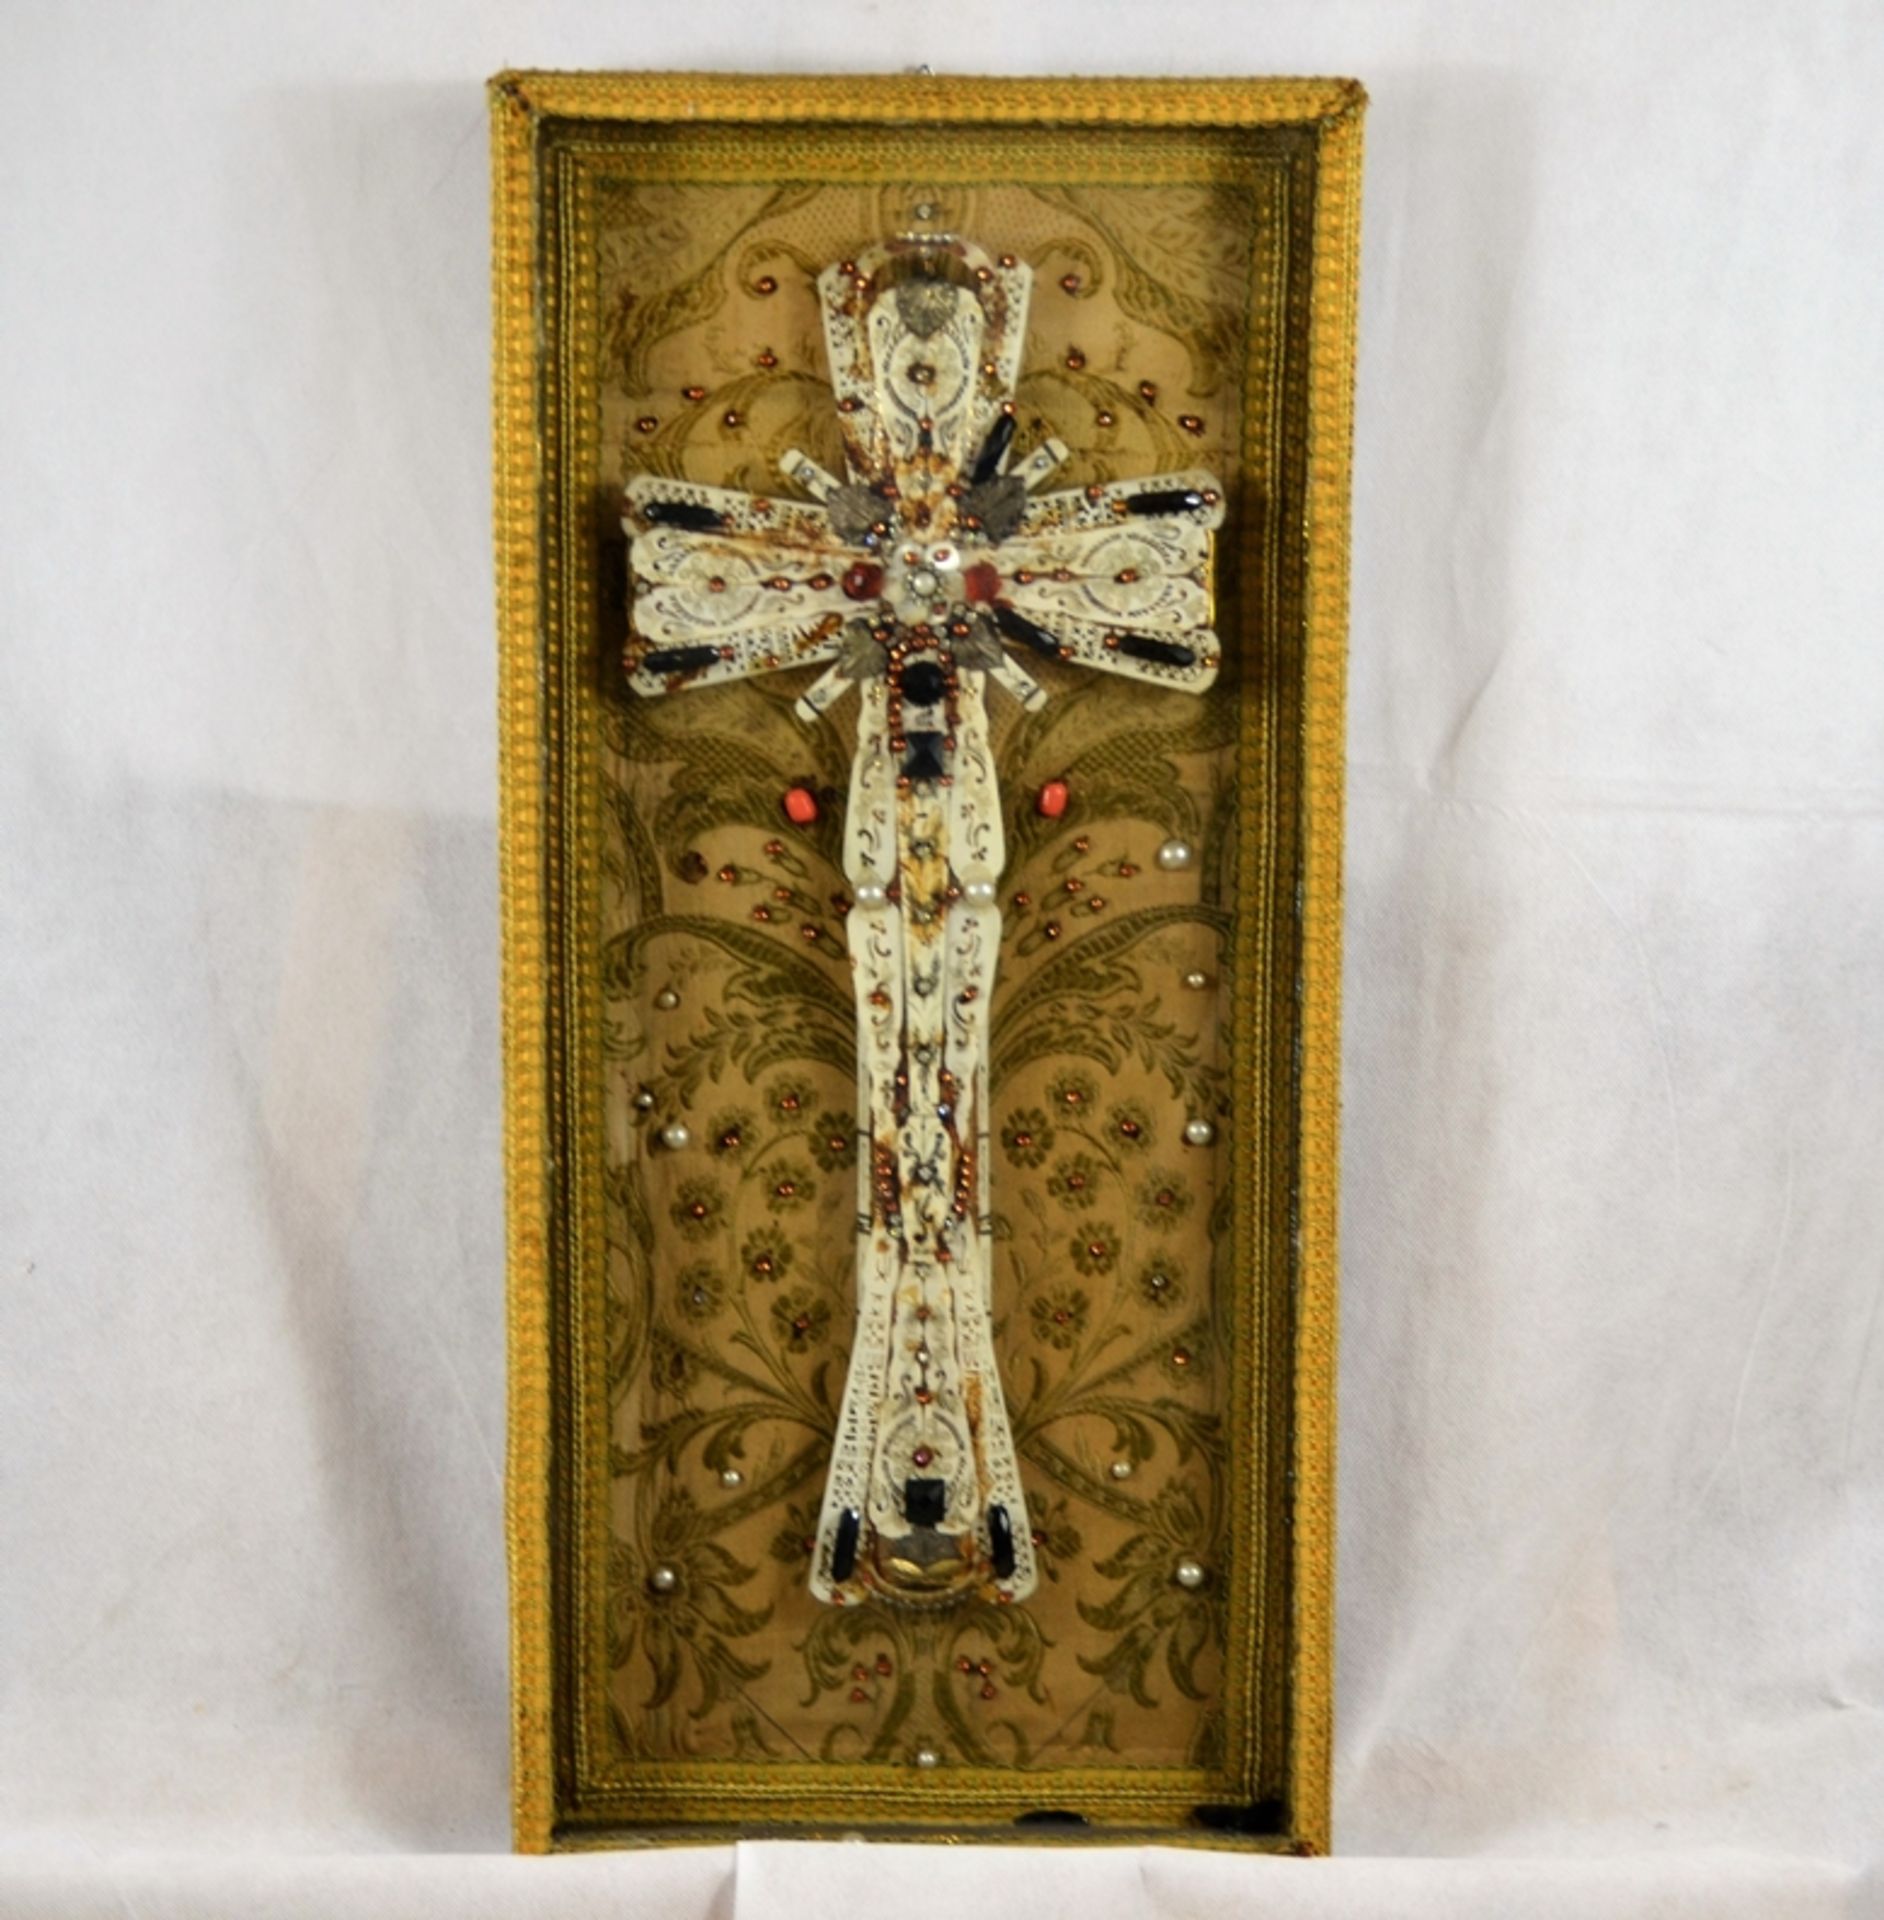 Klosterarbeit Kreuz verglaster Kastenrahmen 20 Jhdt., aufwendig gearbeitet, ca. 66,5 x 30,5 cm, ein